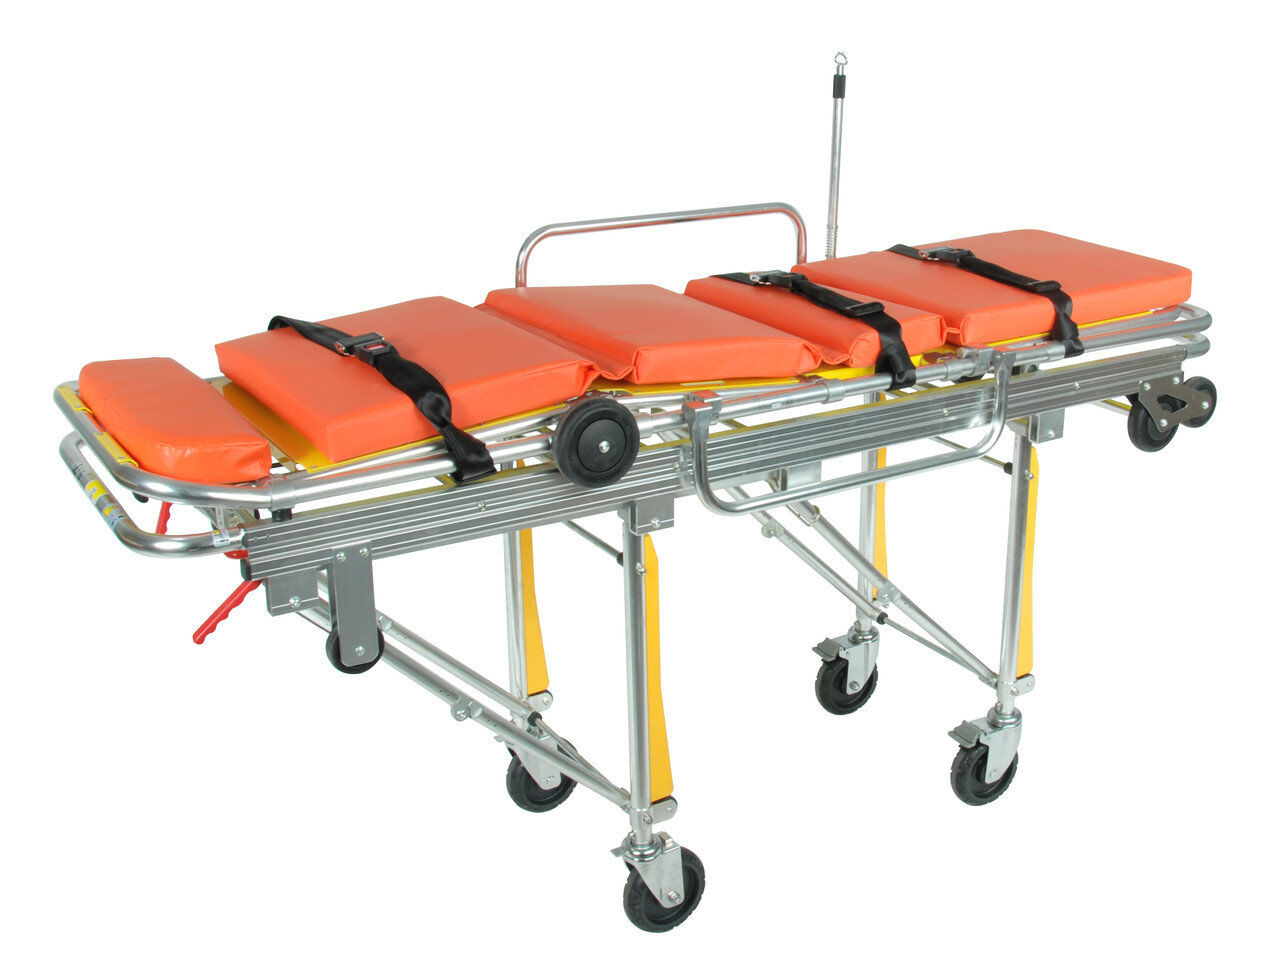 Каталка для автомобилей скорой медицинской помощи ММ-А3-1 со съемными кресельными носилками